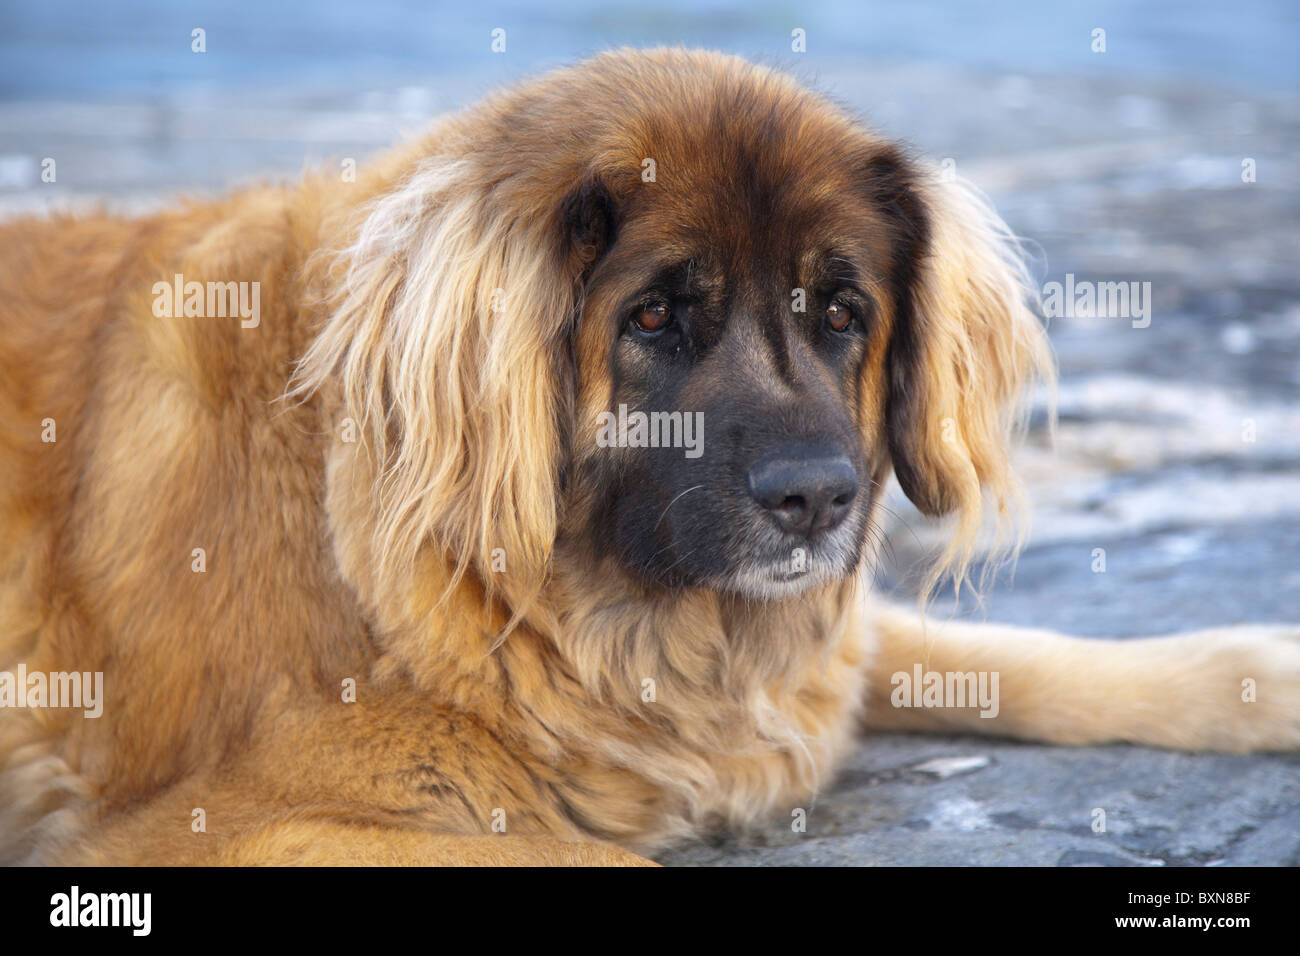 Cara de perro Leonberger. Foto de stock